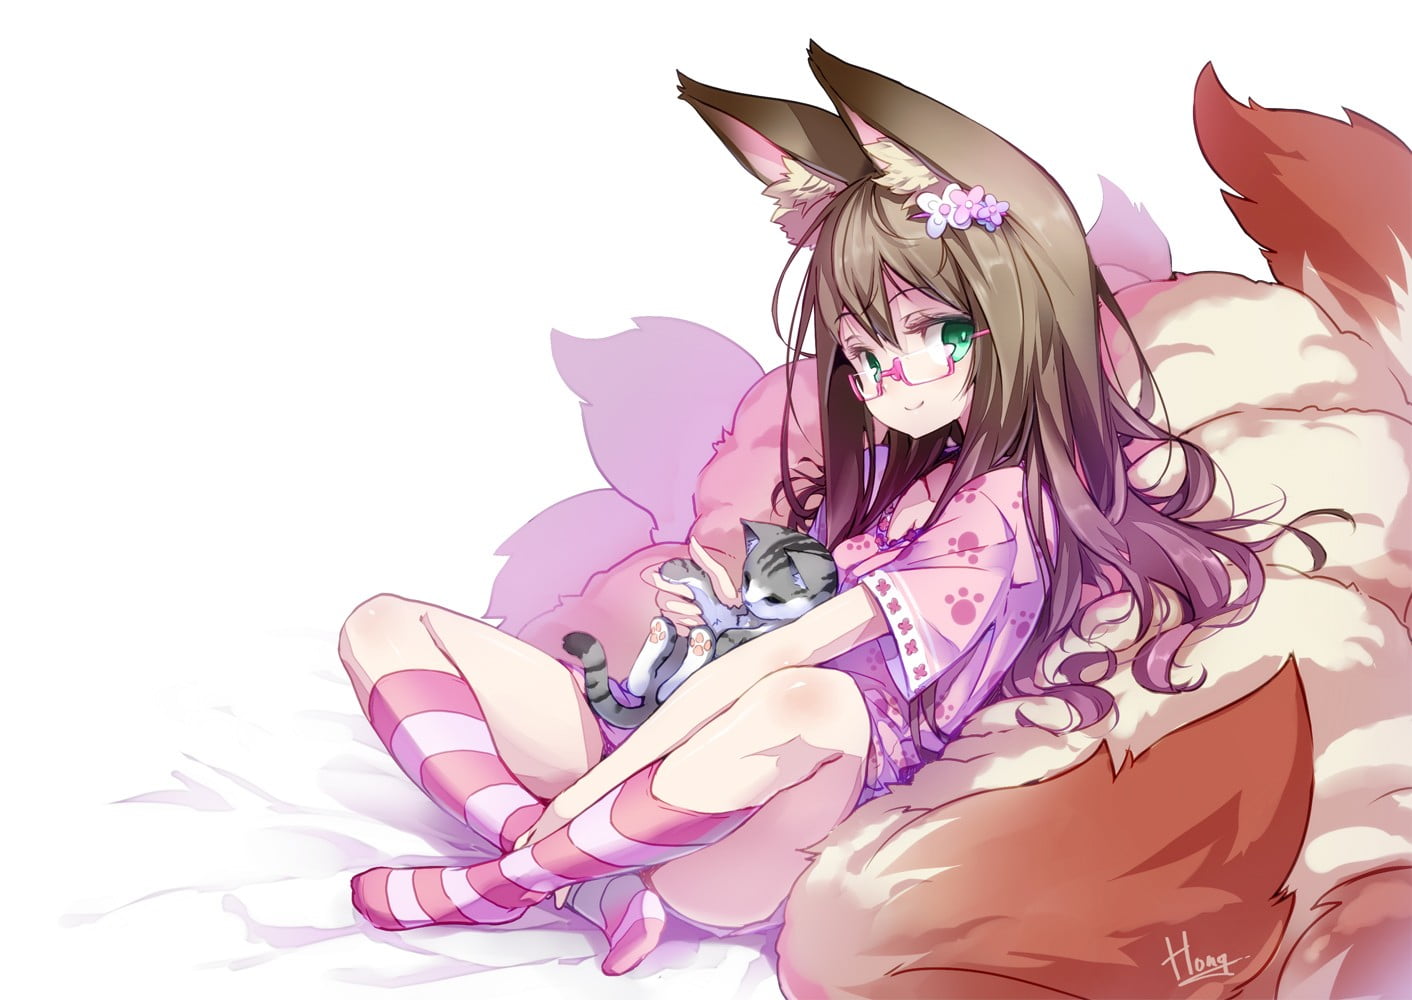 female anime character holding cat, anime girls, fox girl, animal ears